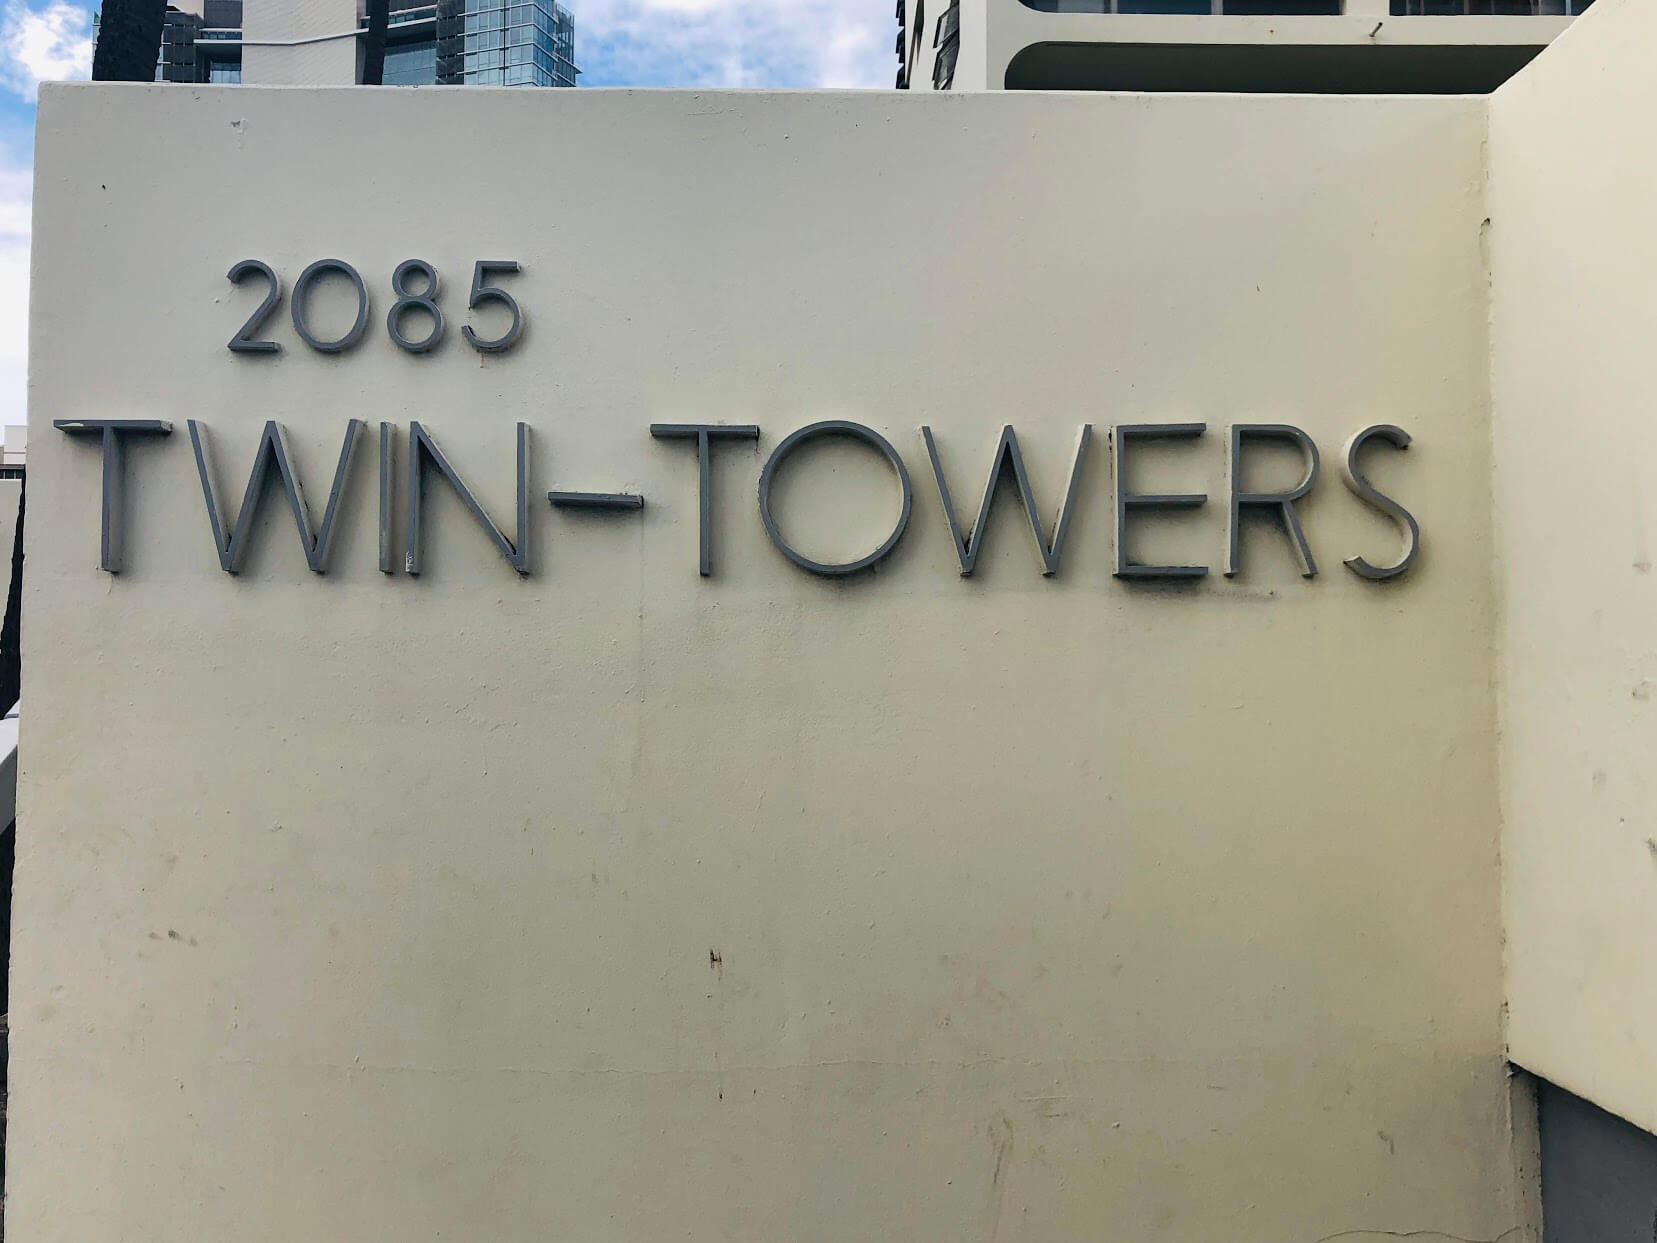 Twin Towersの看板